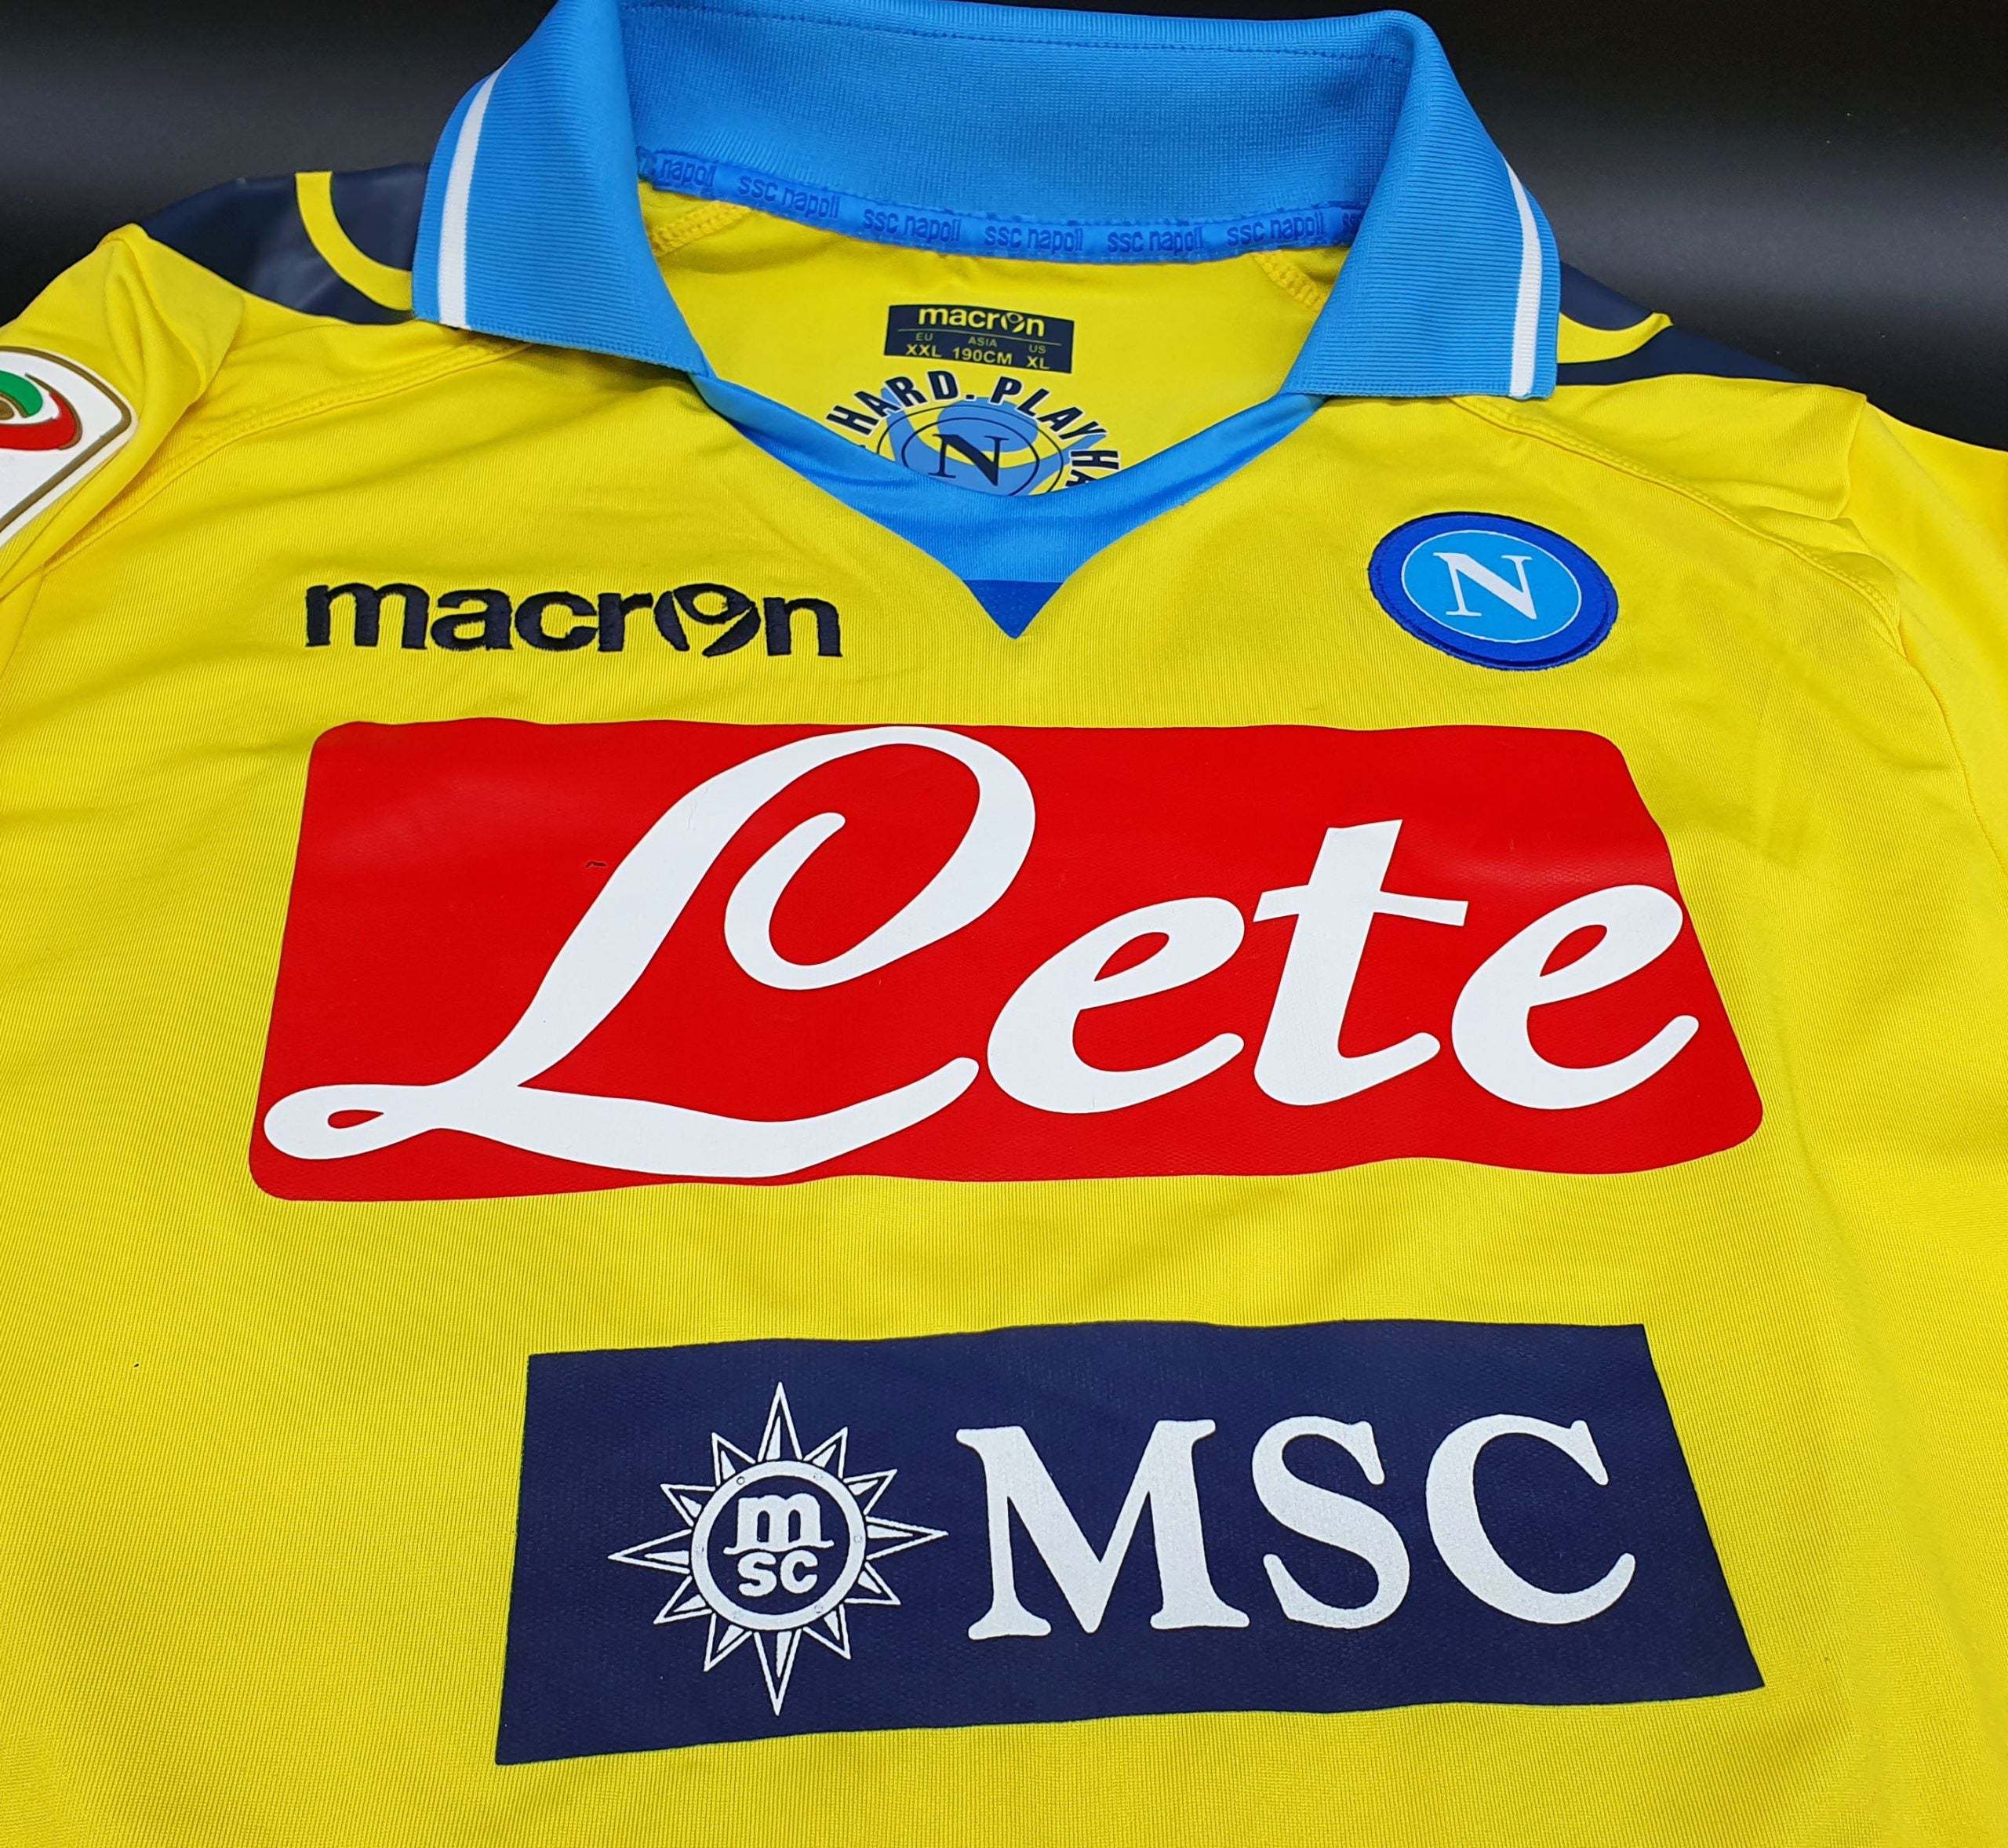 Camiseta del partido del SSC Napoli